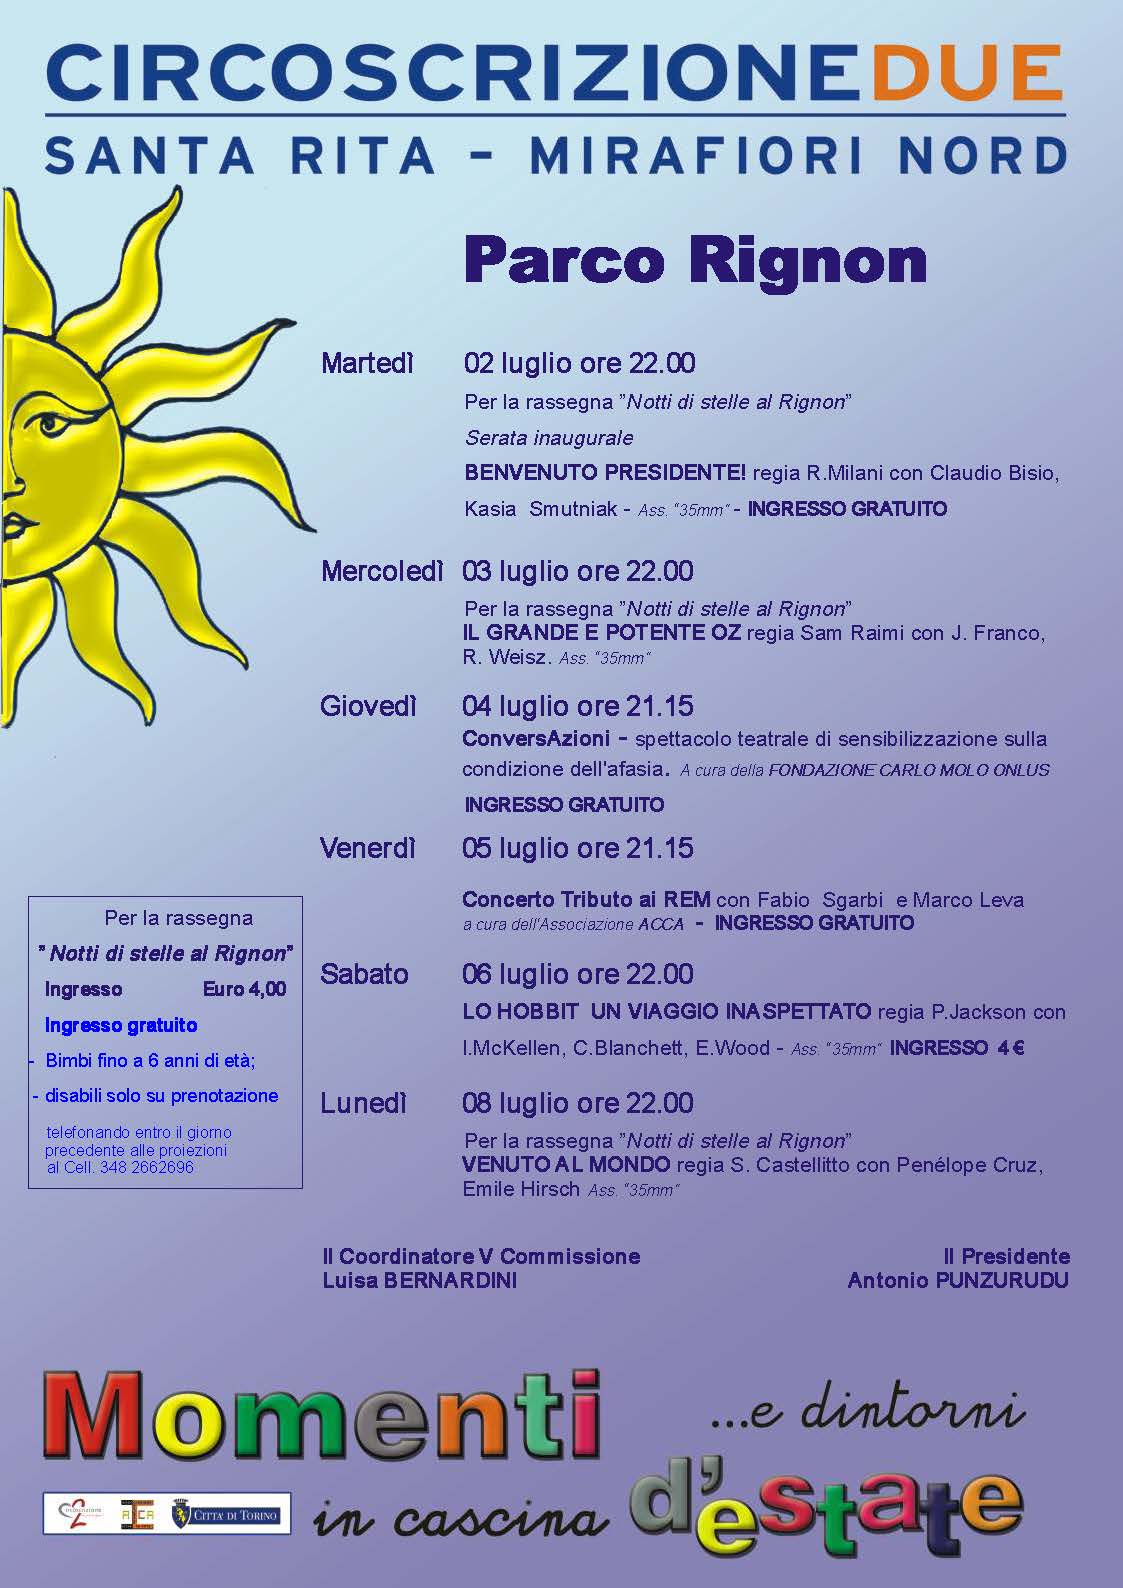 P Rignon 2_8 luglio (2)